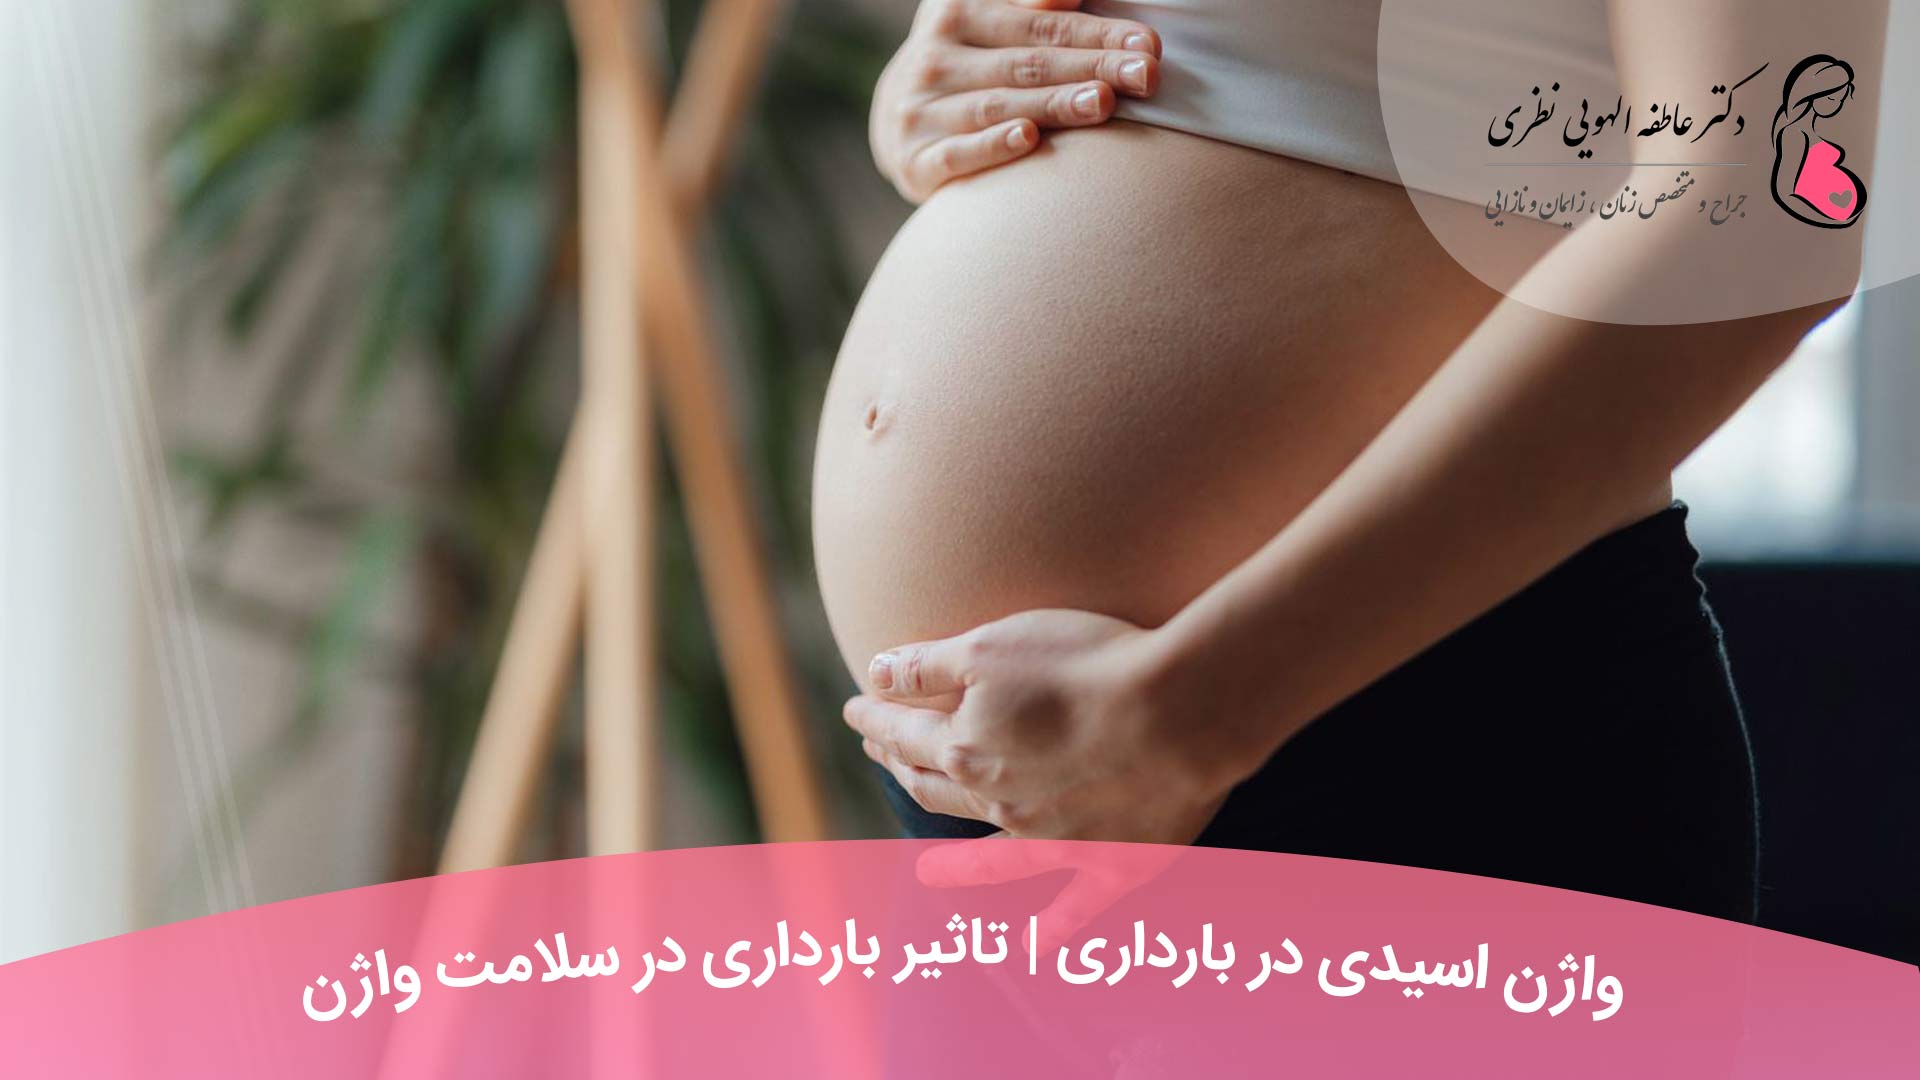 واژن اسیدی در بارداری | تاثیر بارداری در سلامت واژن